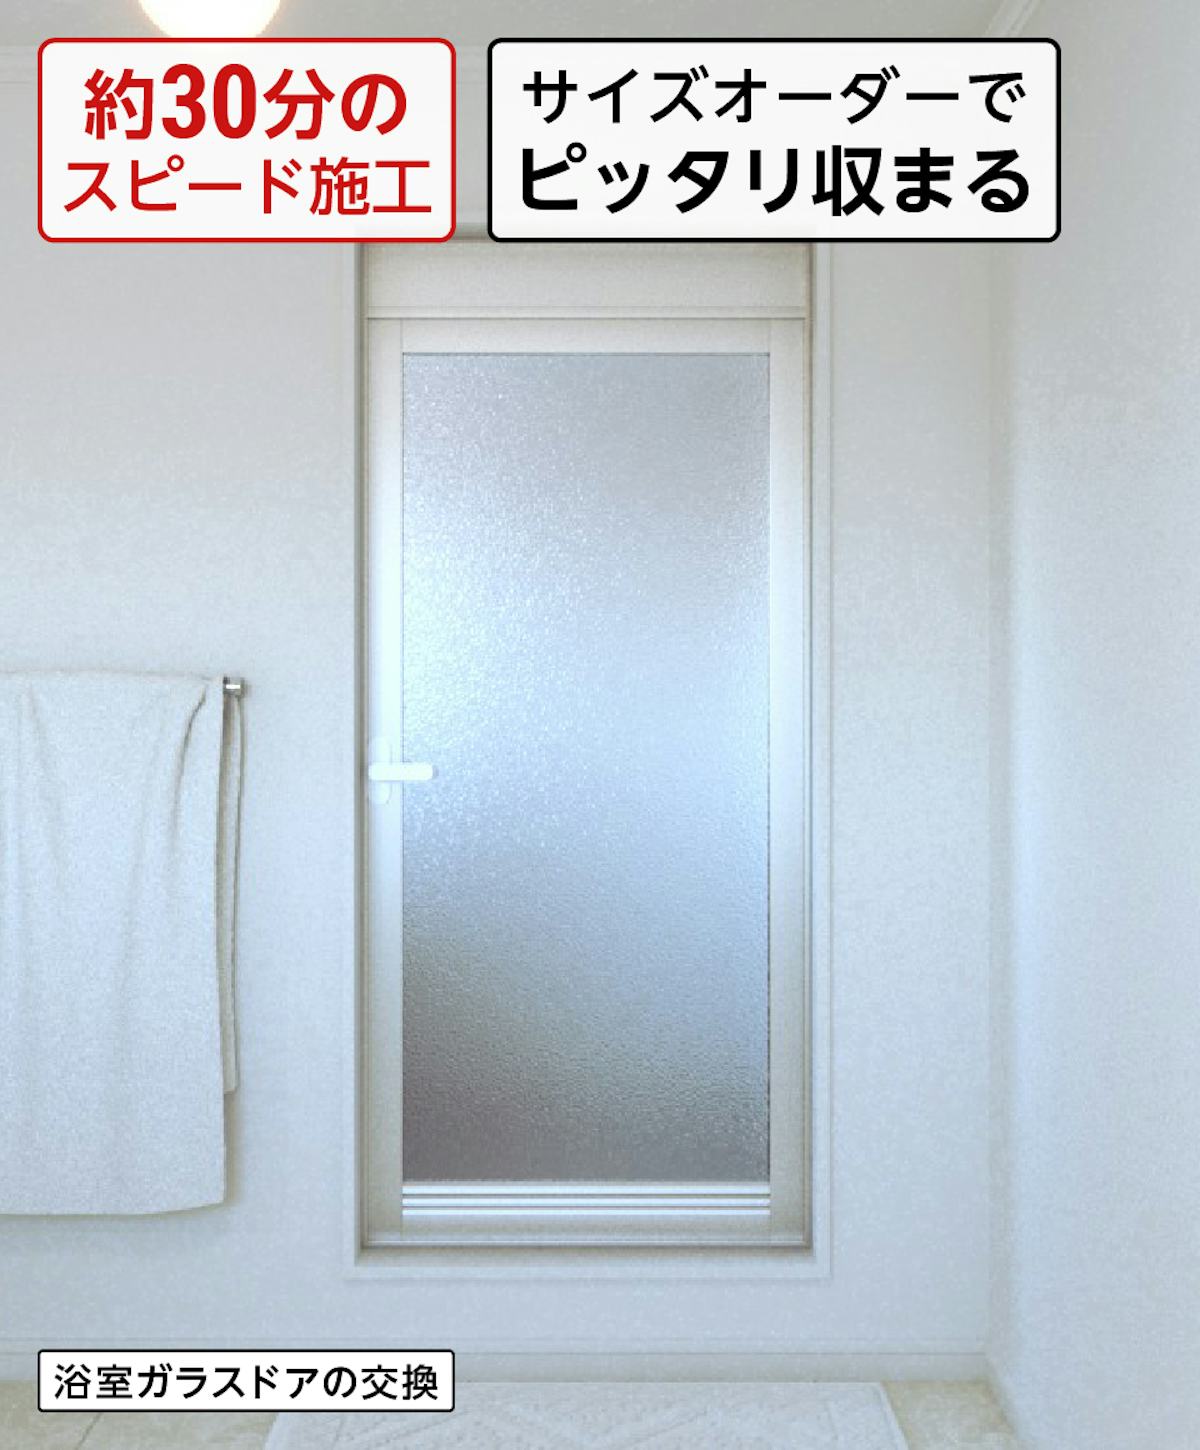 浴室(交換)用のガラスドアには「交換用浴室ガラスドア」がおすすめ